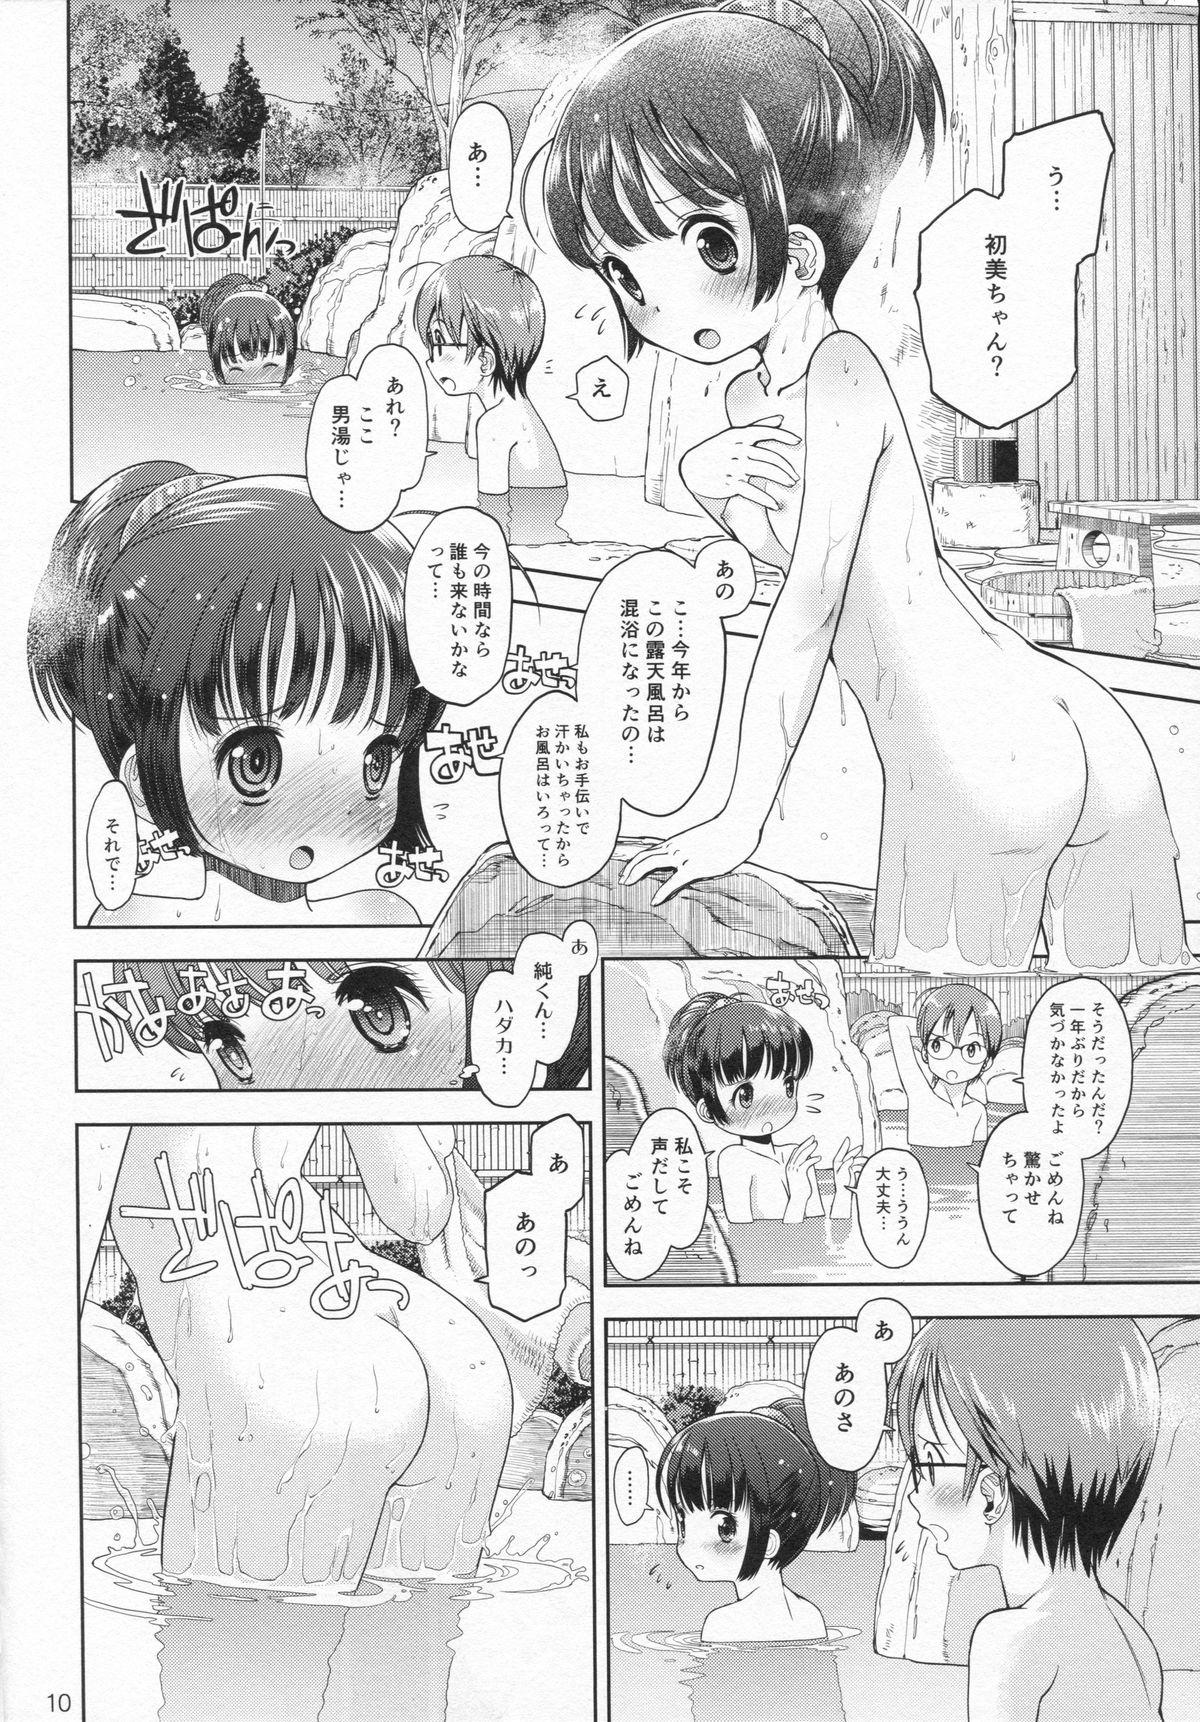 Cumming (C87) [Eroliya (Tamachi Yuki, iuro)] Eroliya 12 - 2014-WINTER Workout - Page 9